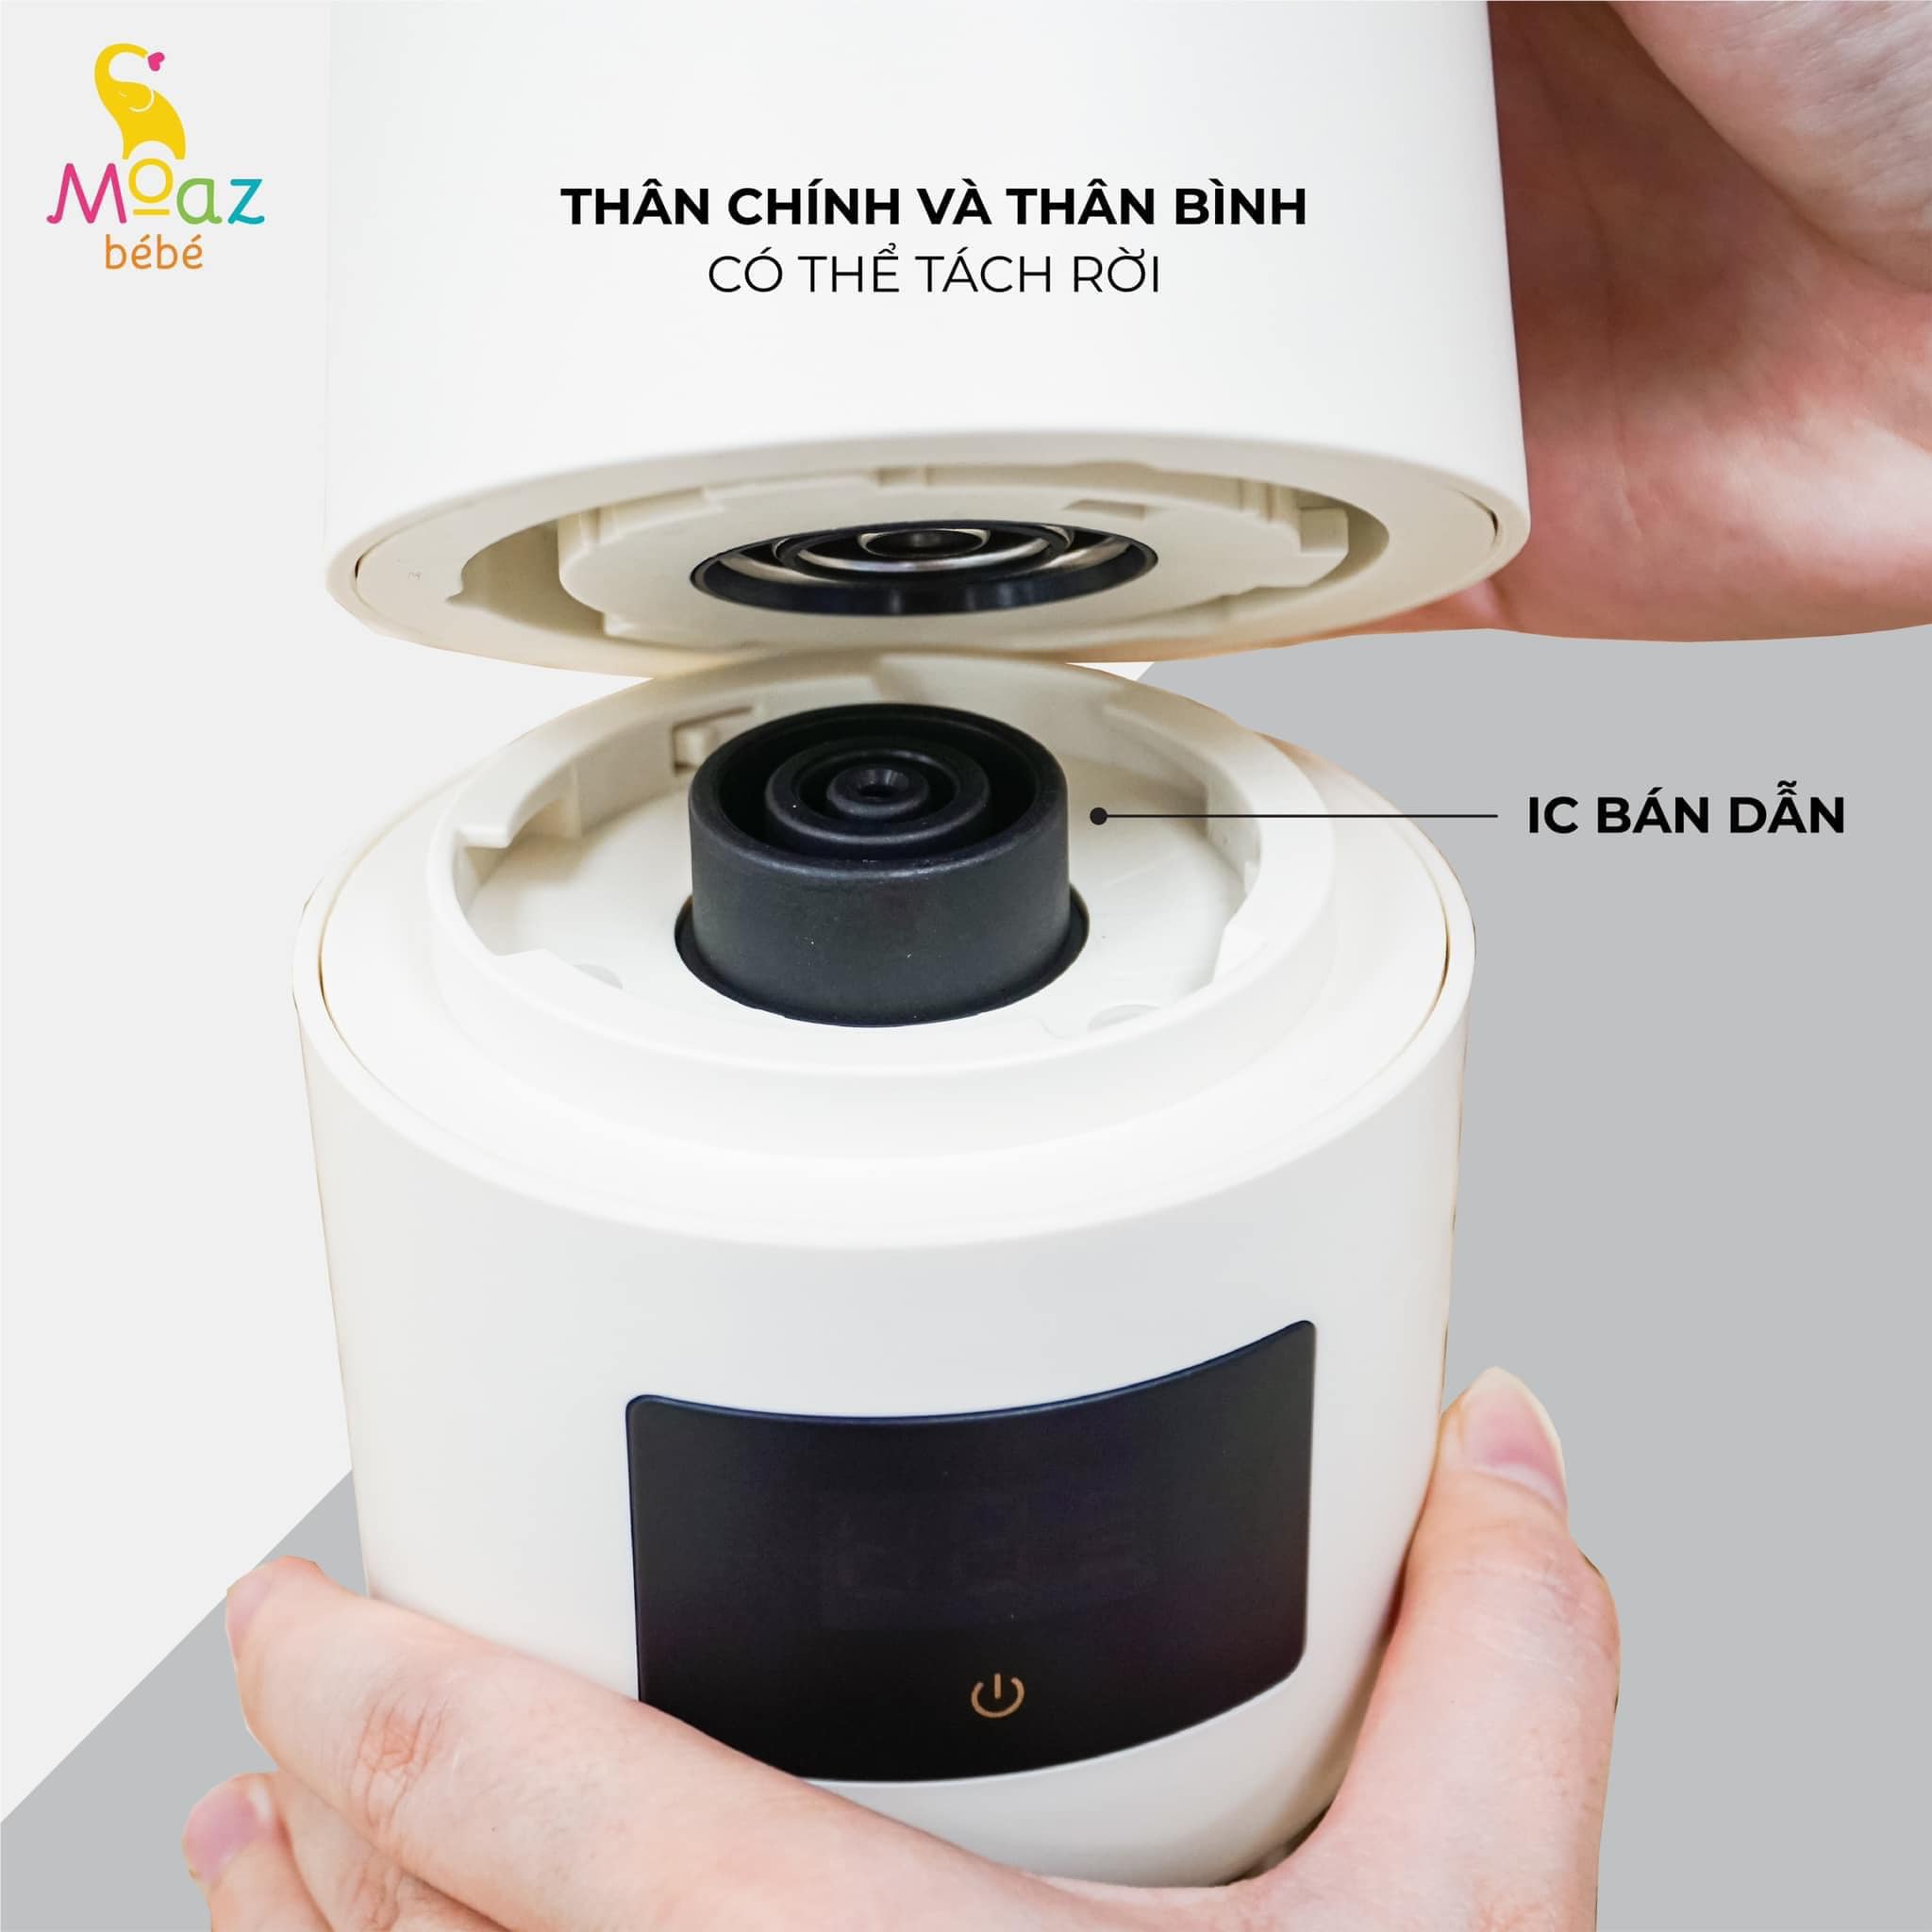 Bình đun nước pha sữa di động Moaz Bebe MB058 cho bé, ấm đun nước mini siêu tốc giữ nhiệt